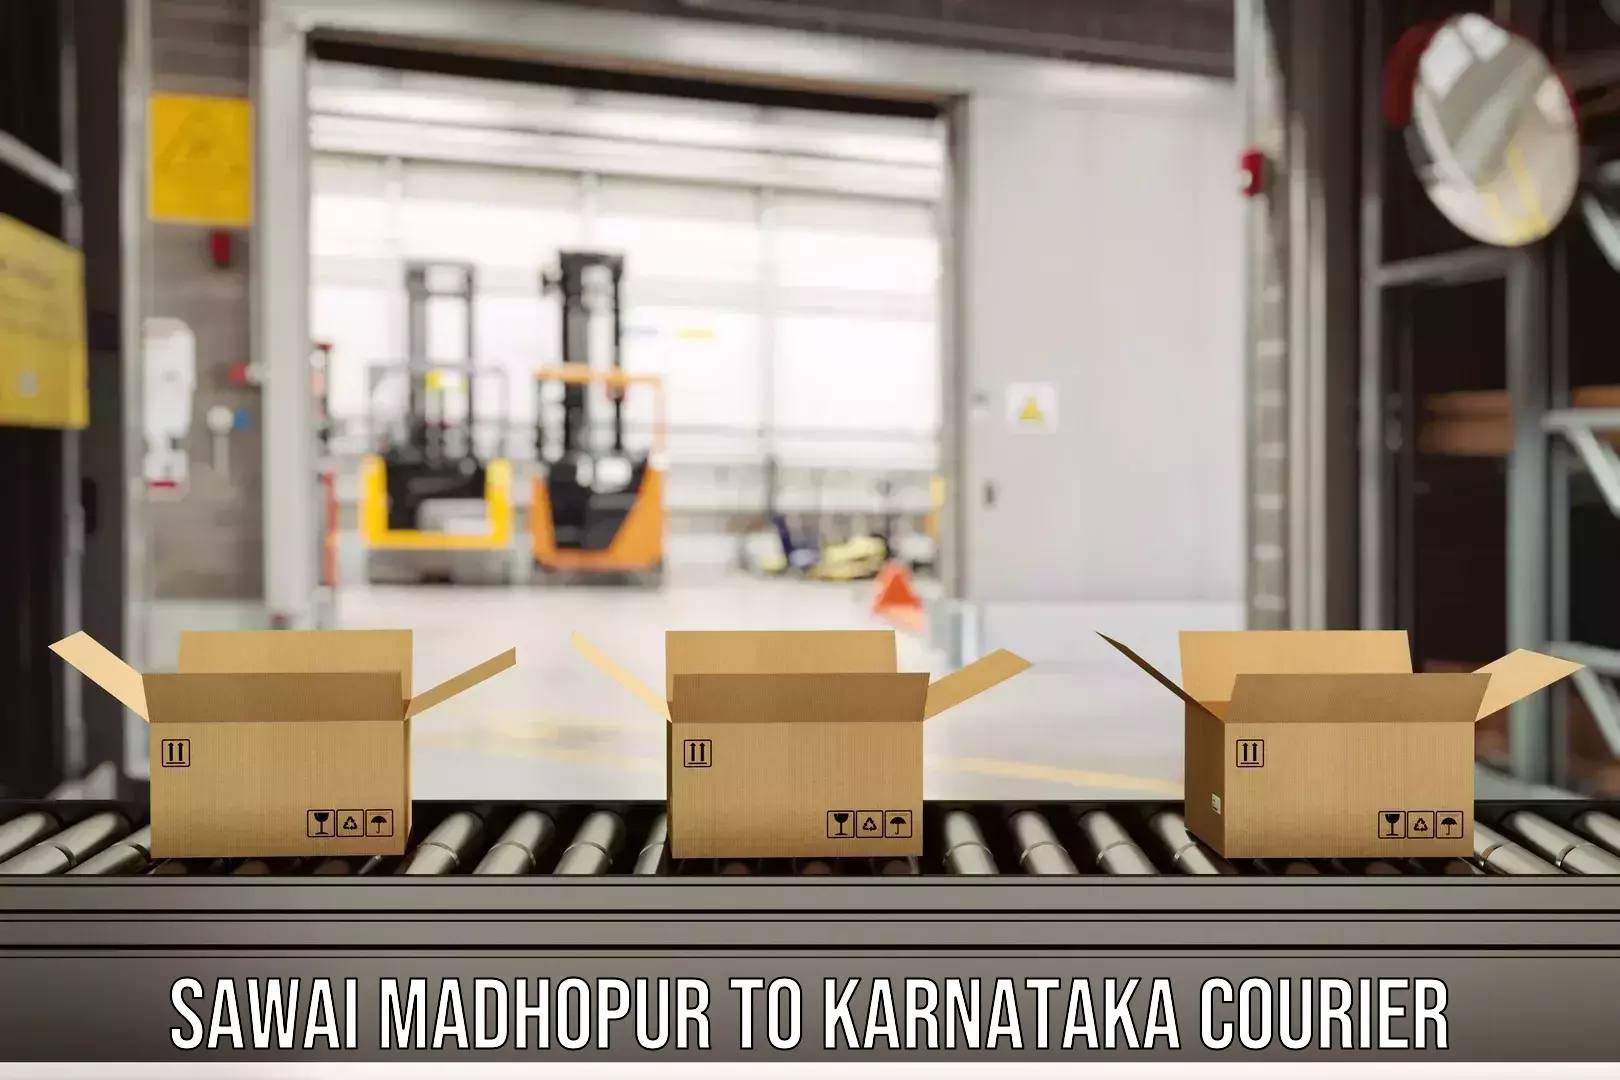 Modern courier technology in Sawai Madhopur to Kanjarakatte